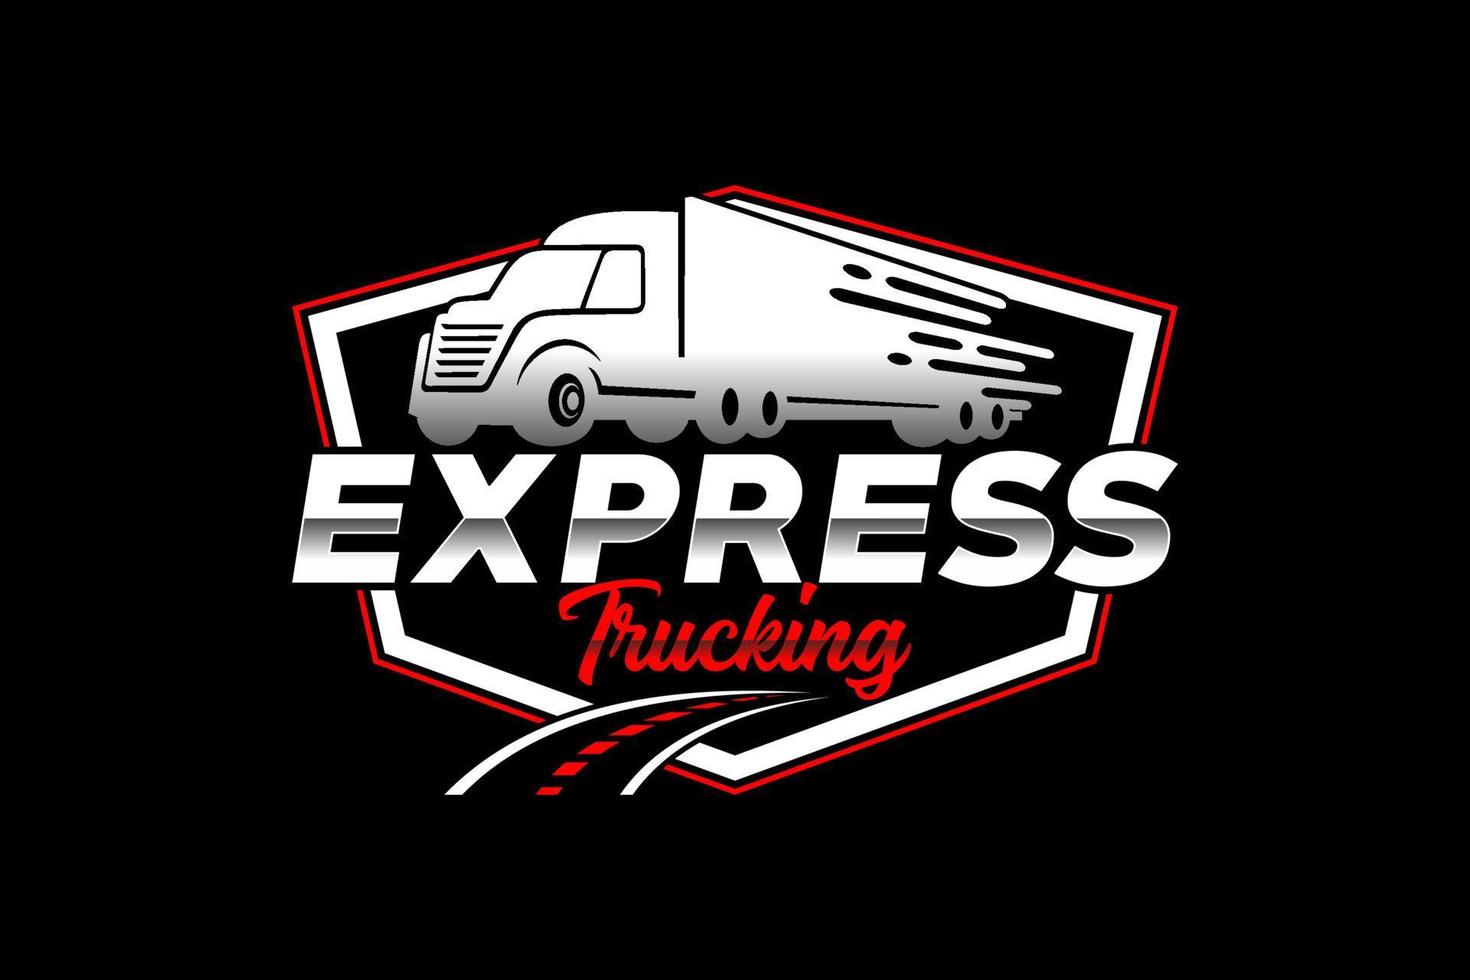 vettore del modello di logo astratto della siluetta del camion. adatto per il logo del carico, camion del carico di consegna, logo logistico